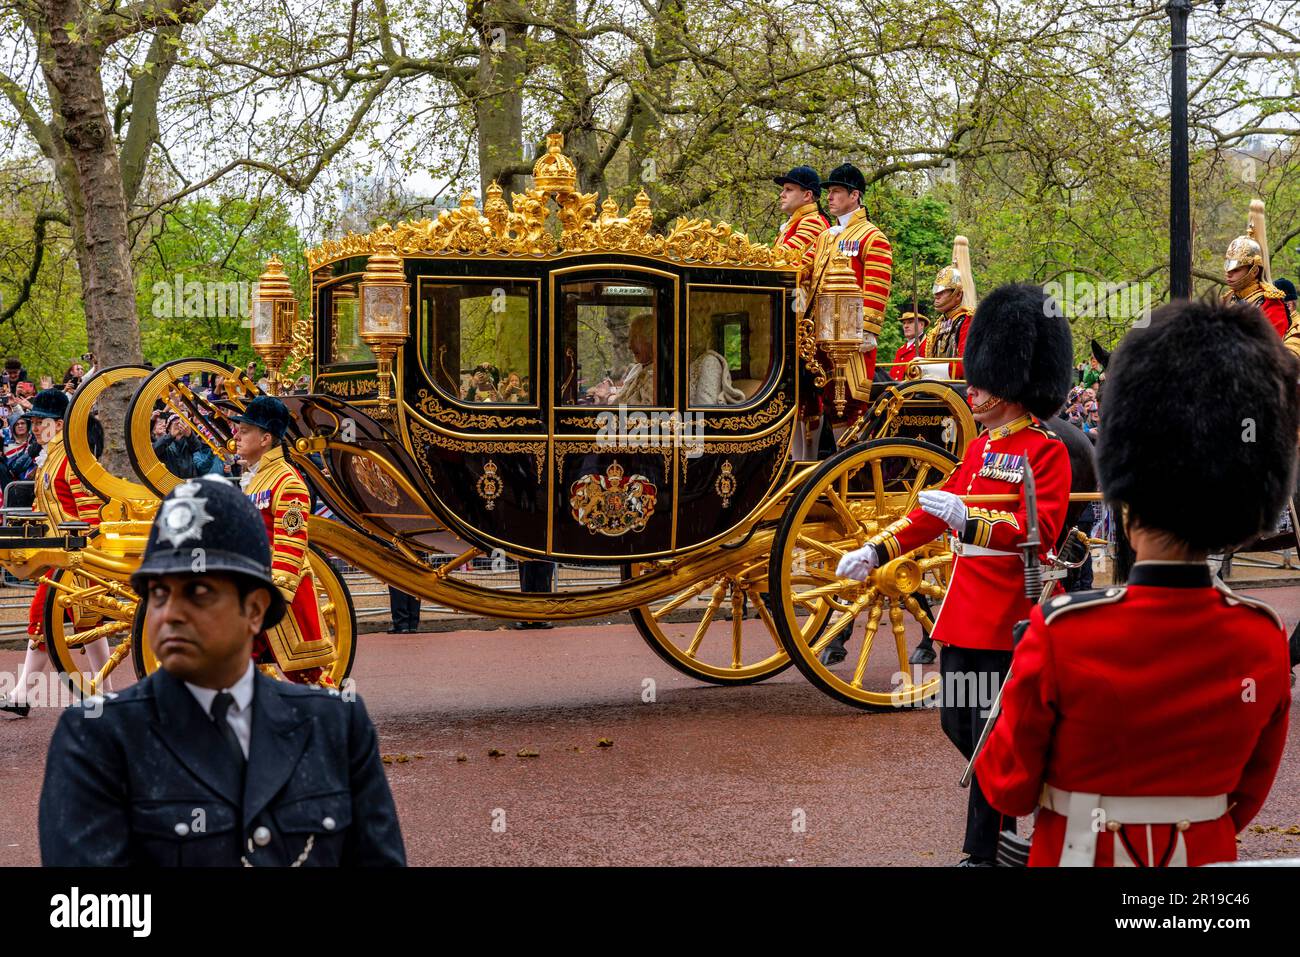 King Charles III et Camilla Queen Consort Voyage dans l'autocar d'état de jubilé de diamant à l'abbaye de Westminster pour le Kings Coronation, Londres, Royaume-Uni. Banque D'Images